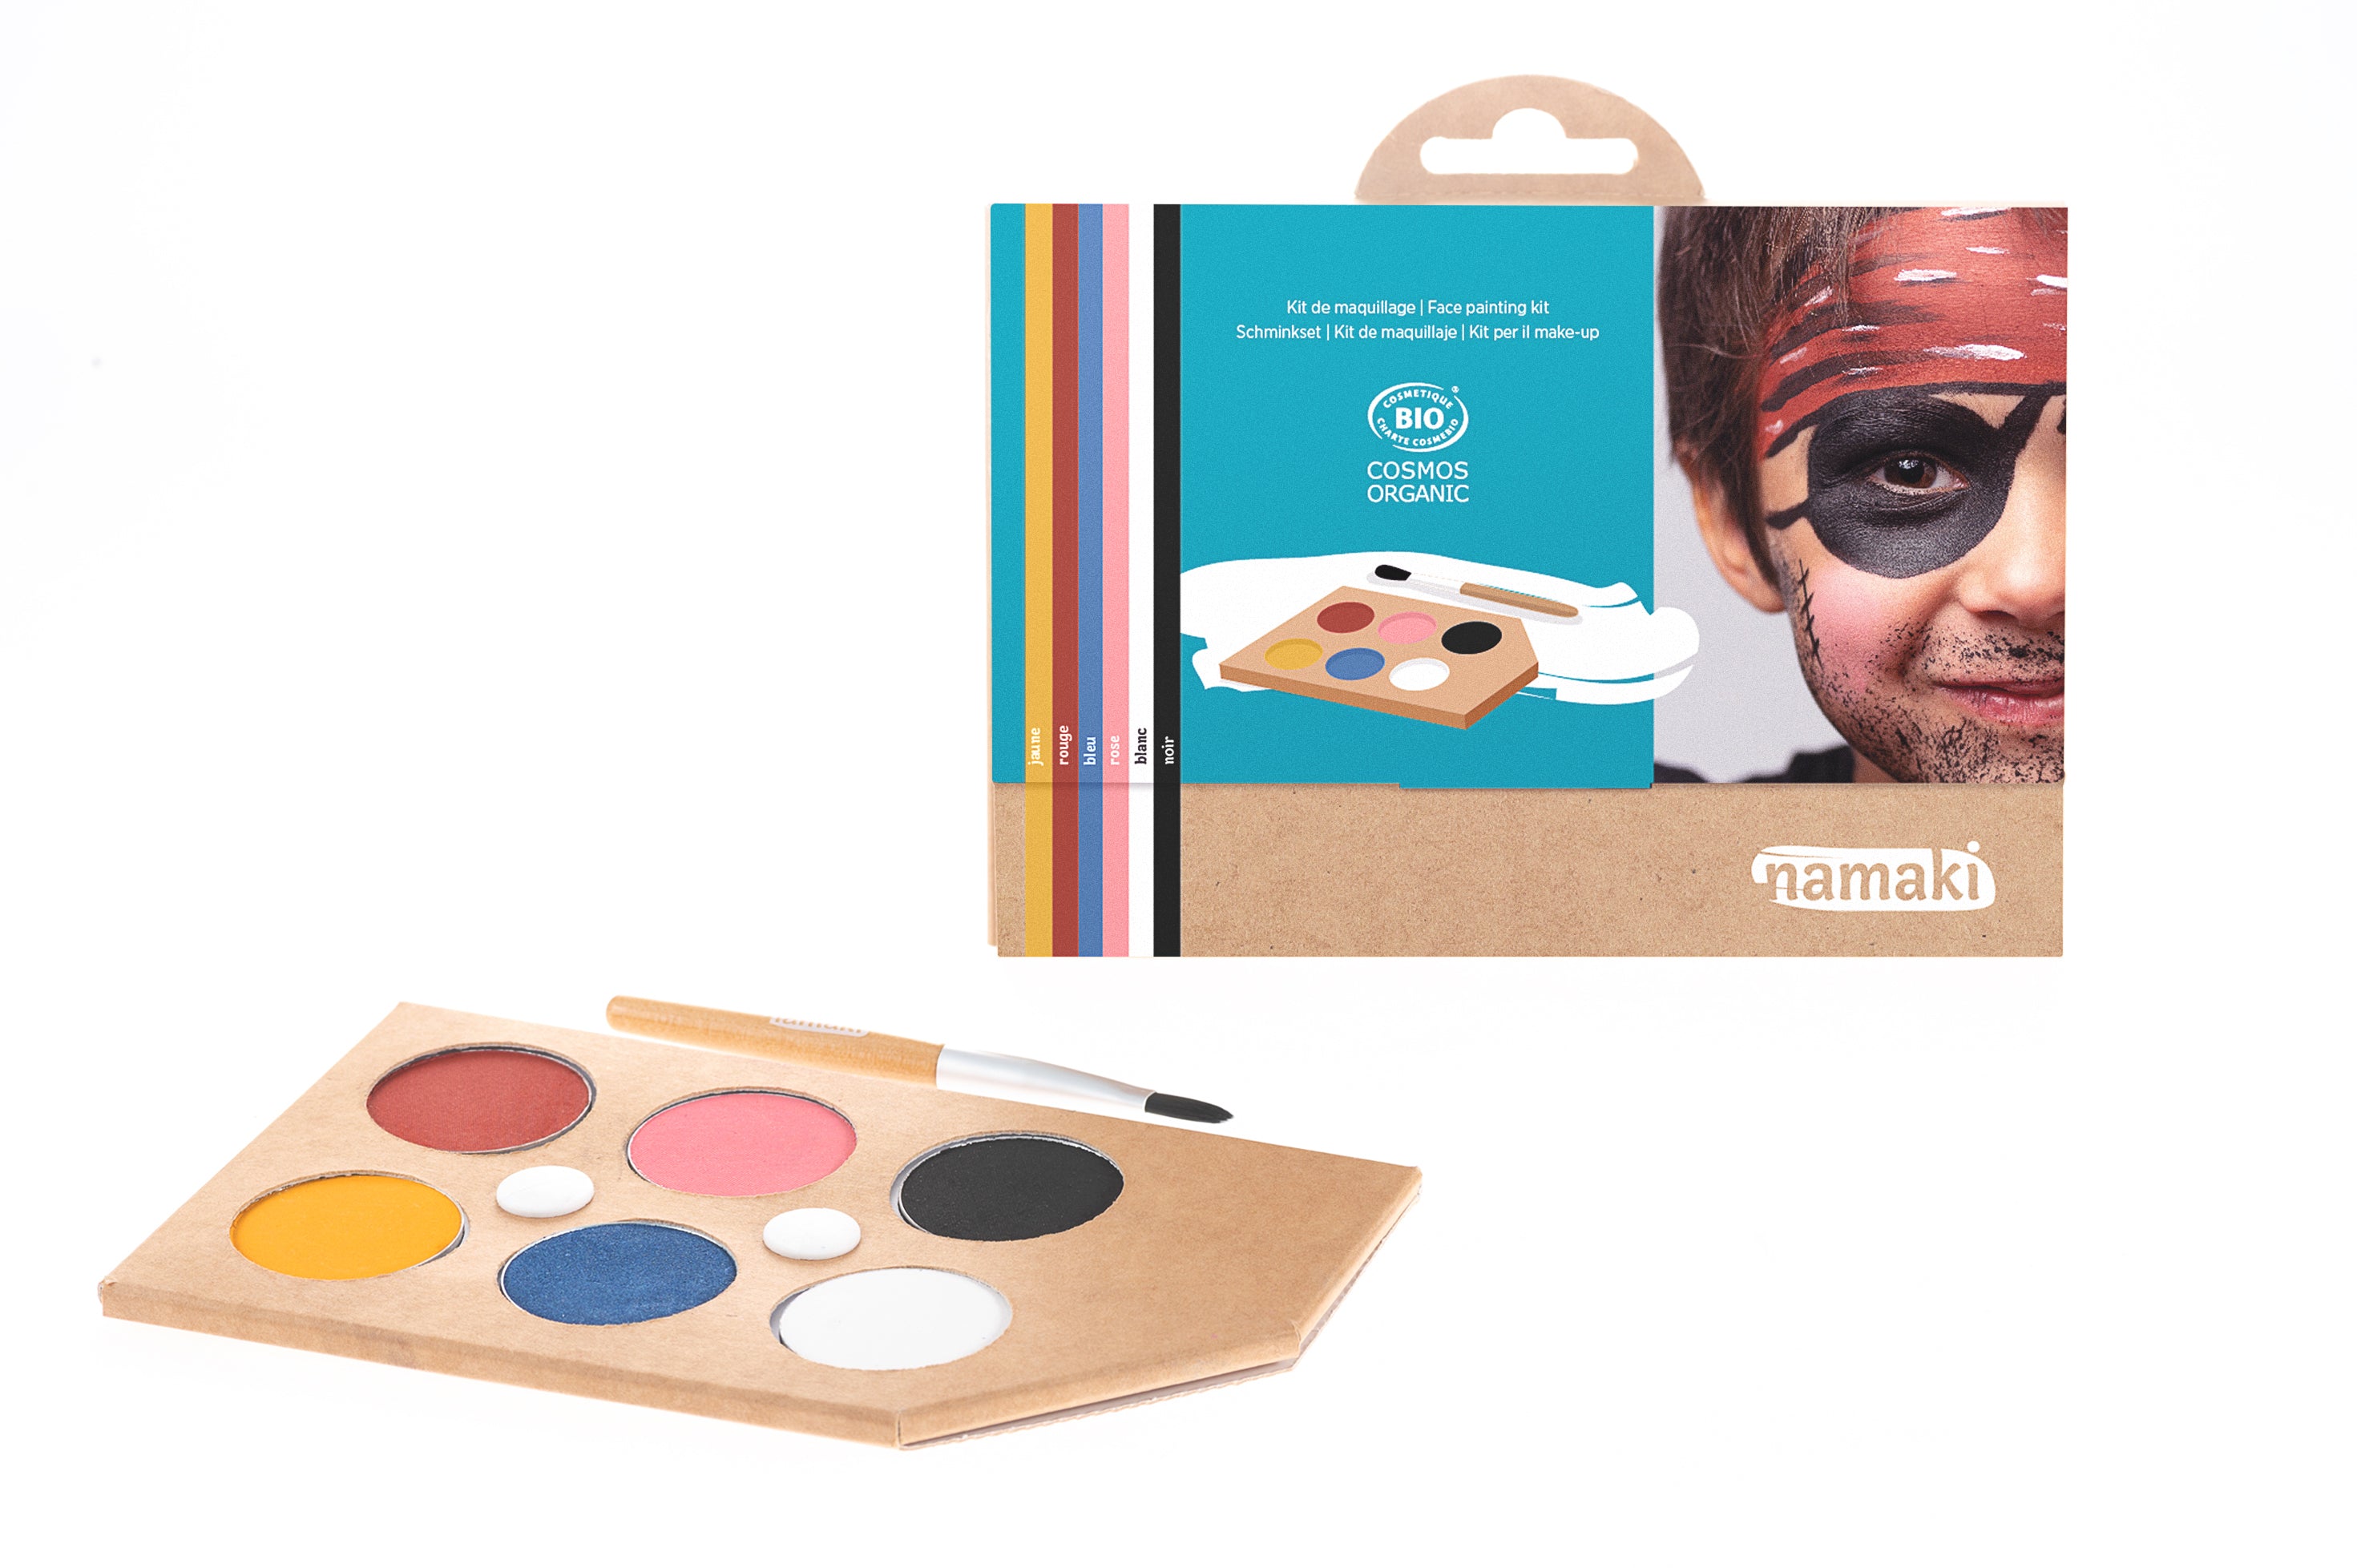 Kit De Maquillage Enfants Arc En Ciel - Maquillage Kits et Palettes Le  Deguisement.com